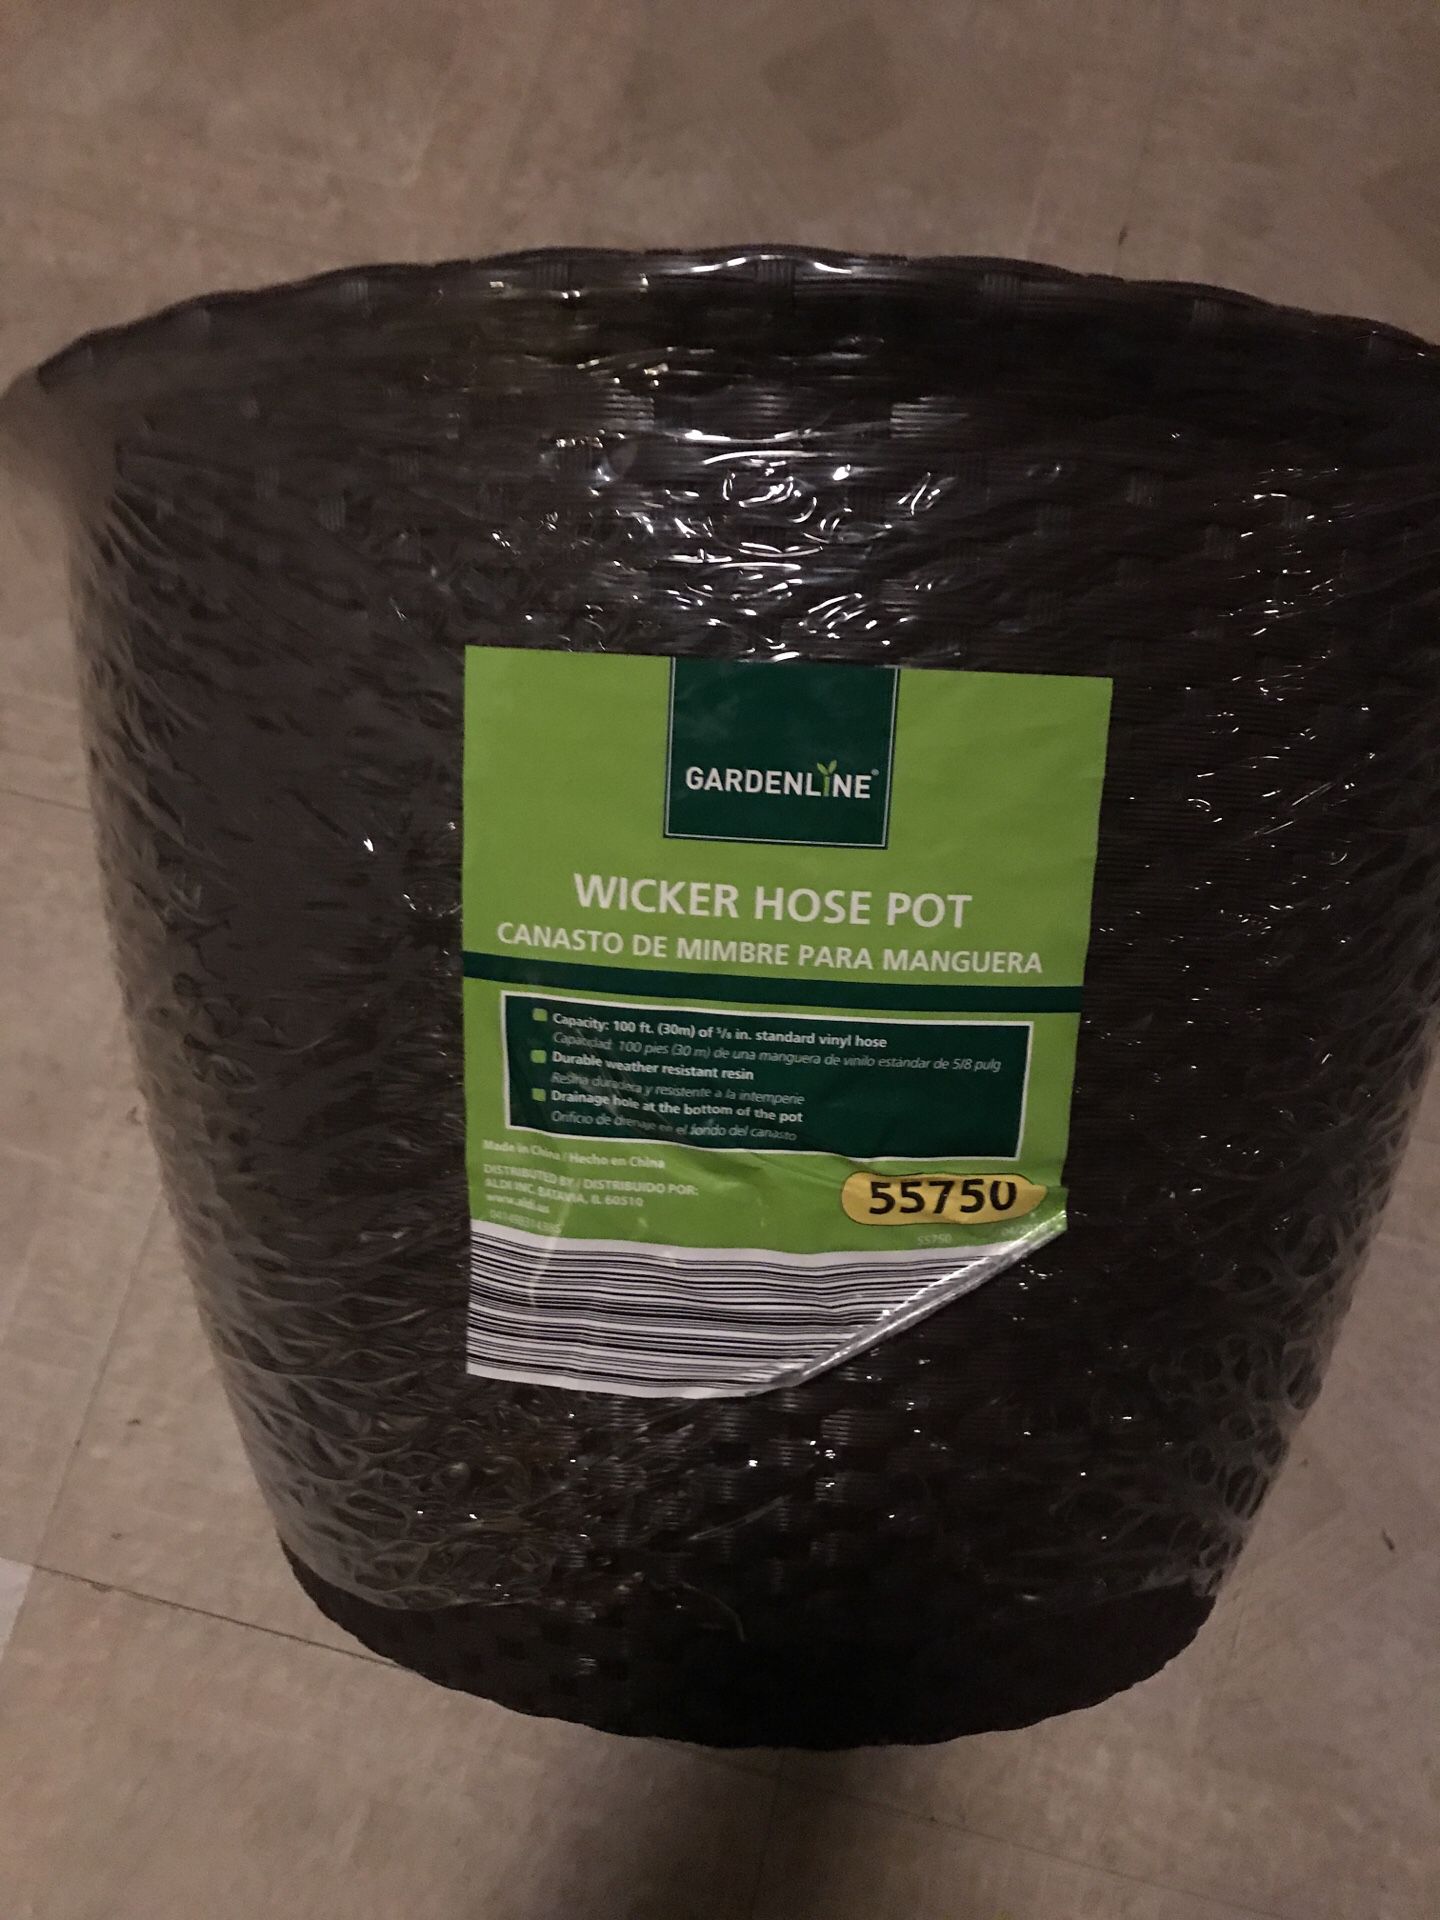 Wicker hose pot